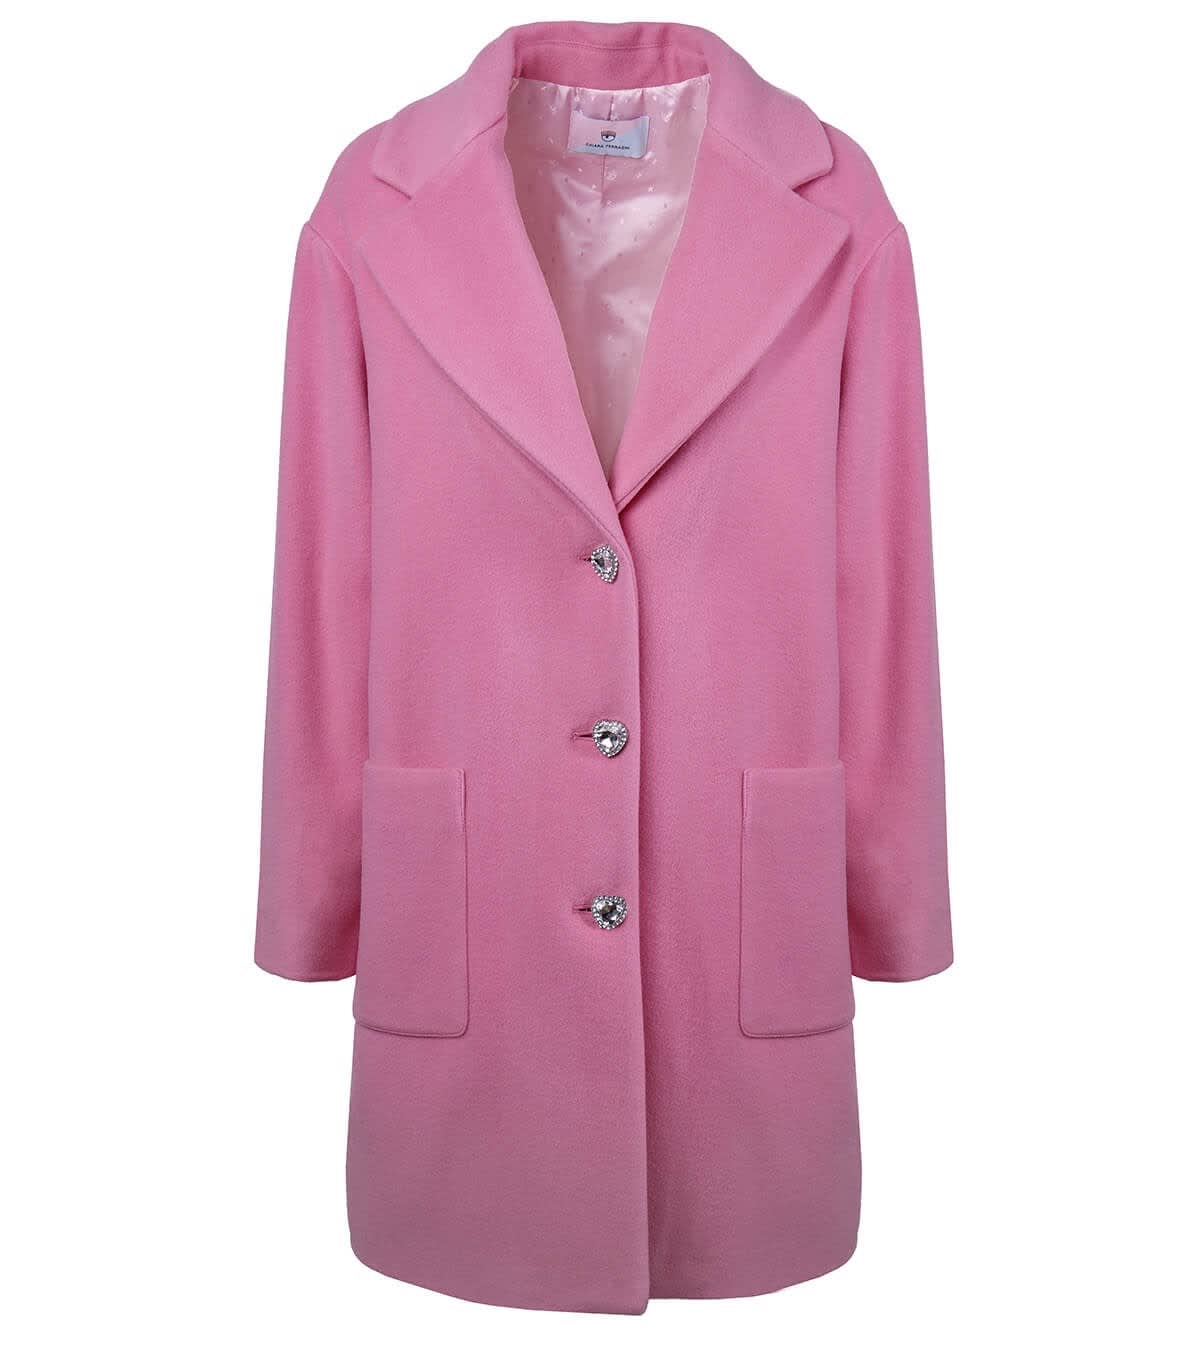 Chiara Ferragni Pink Wool Coat